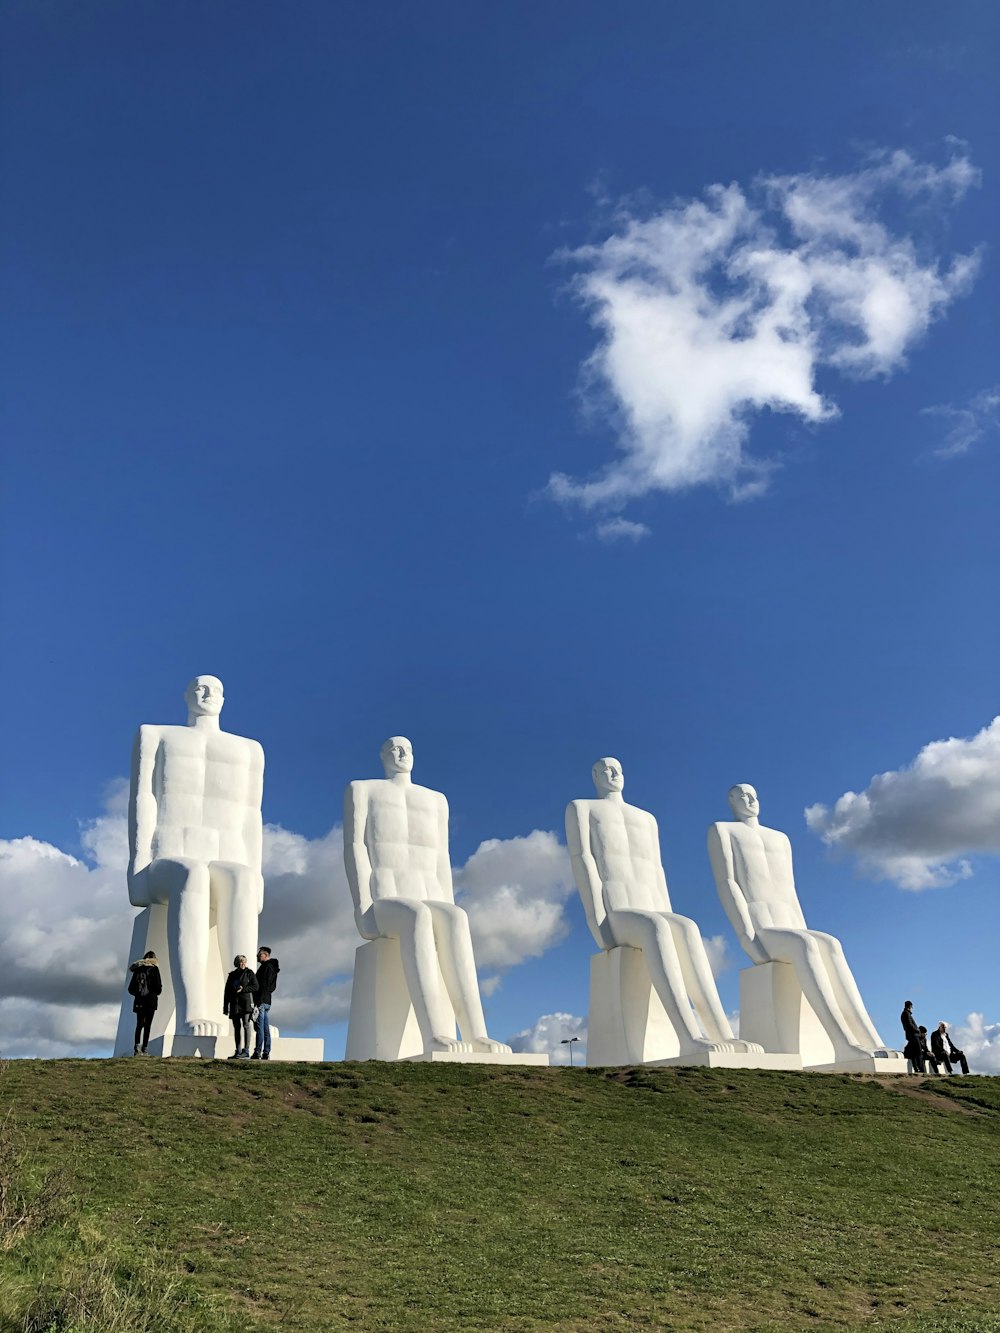 Foto zum Thema Weiße Statuen auf grünem Gras unter blauem Himmel tagsüber –  Kostenloses Bild zu Esbjerg auf Unsplash